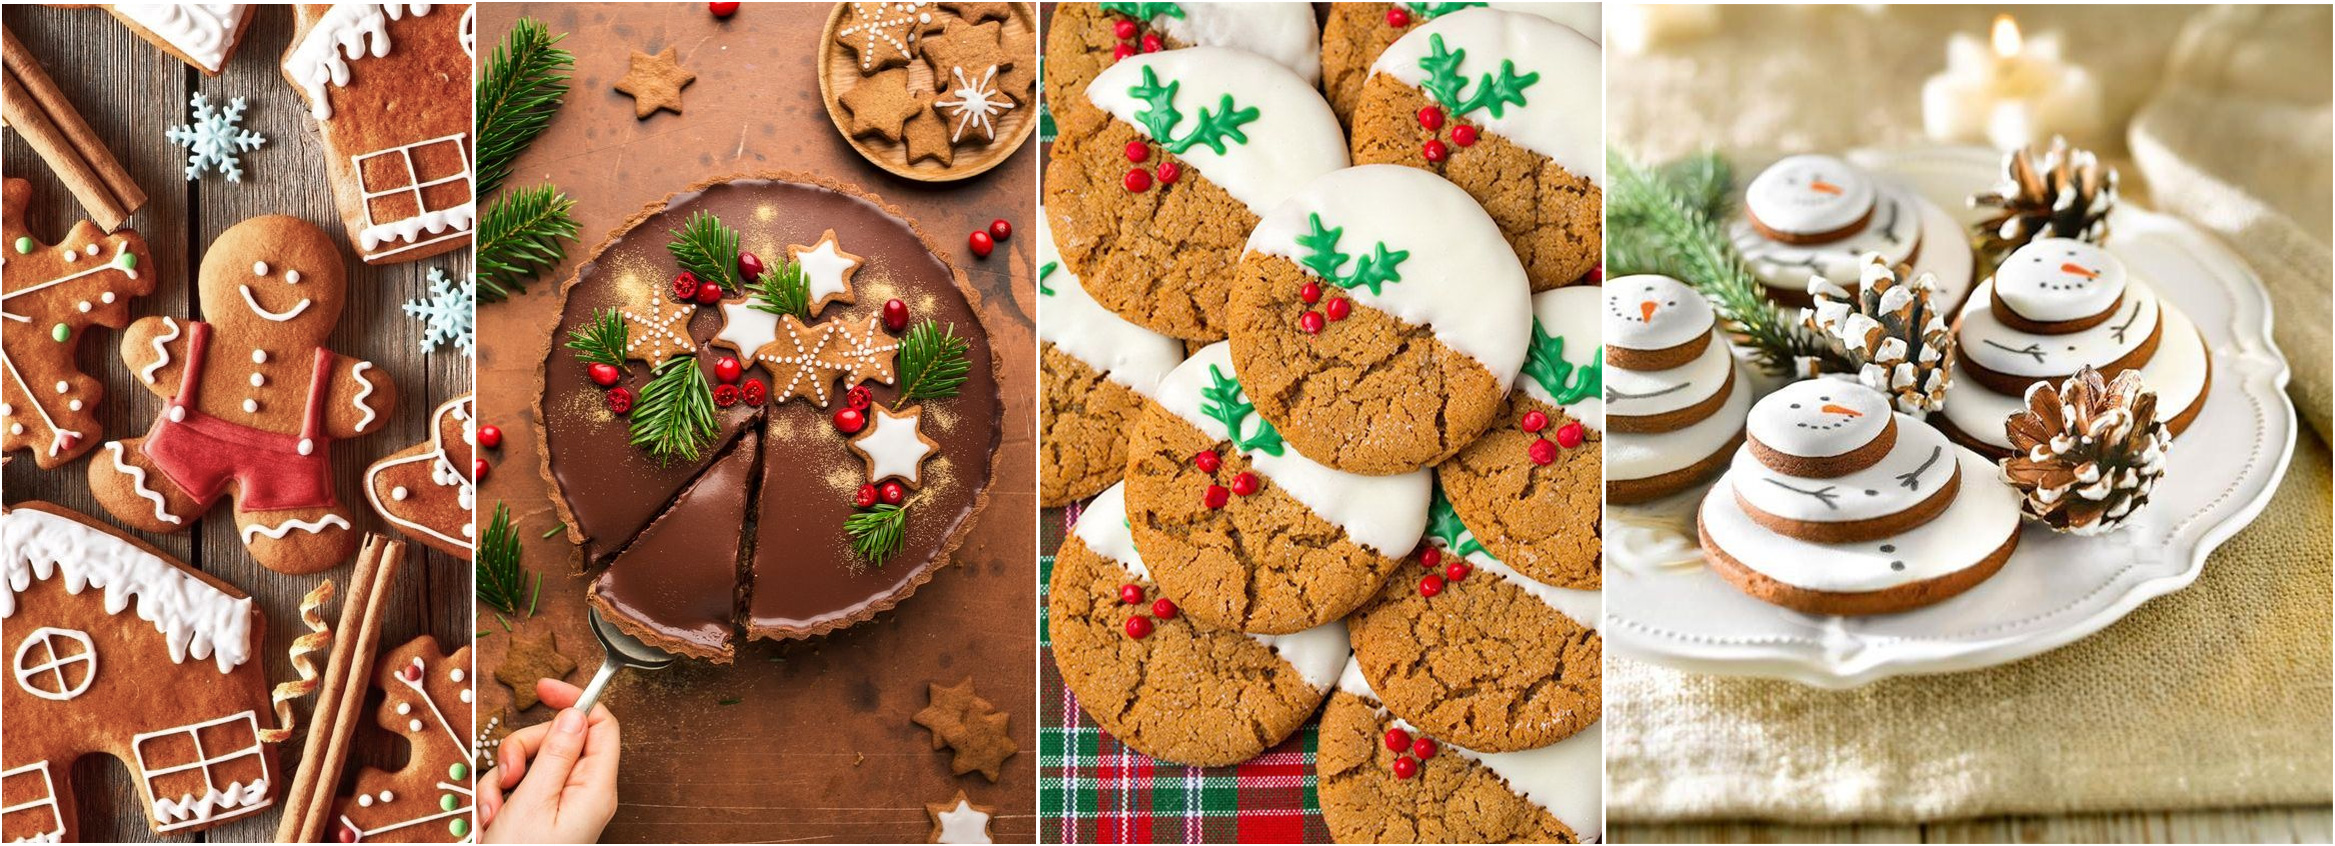 Сладкие подарки всегда вызывают радость. Аппетитный рождественский кекс с сухофруктами и пряностями или печенье можно украсить кулинарными красками и глазурью. Попробуйте — невероятно вкусно.